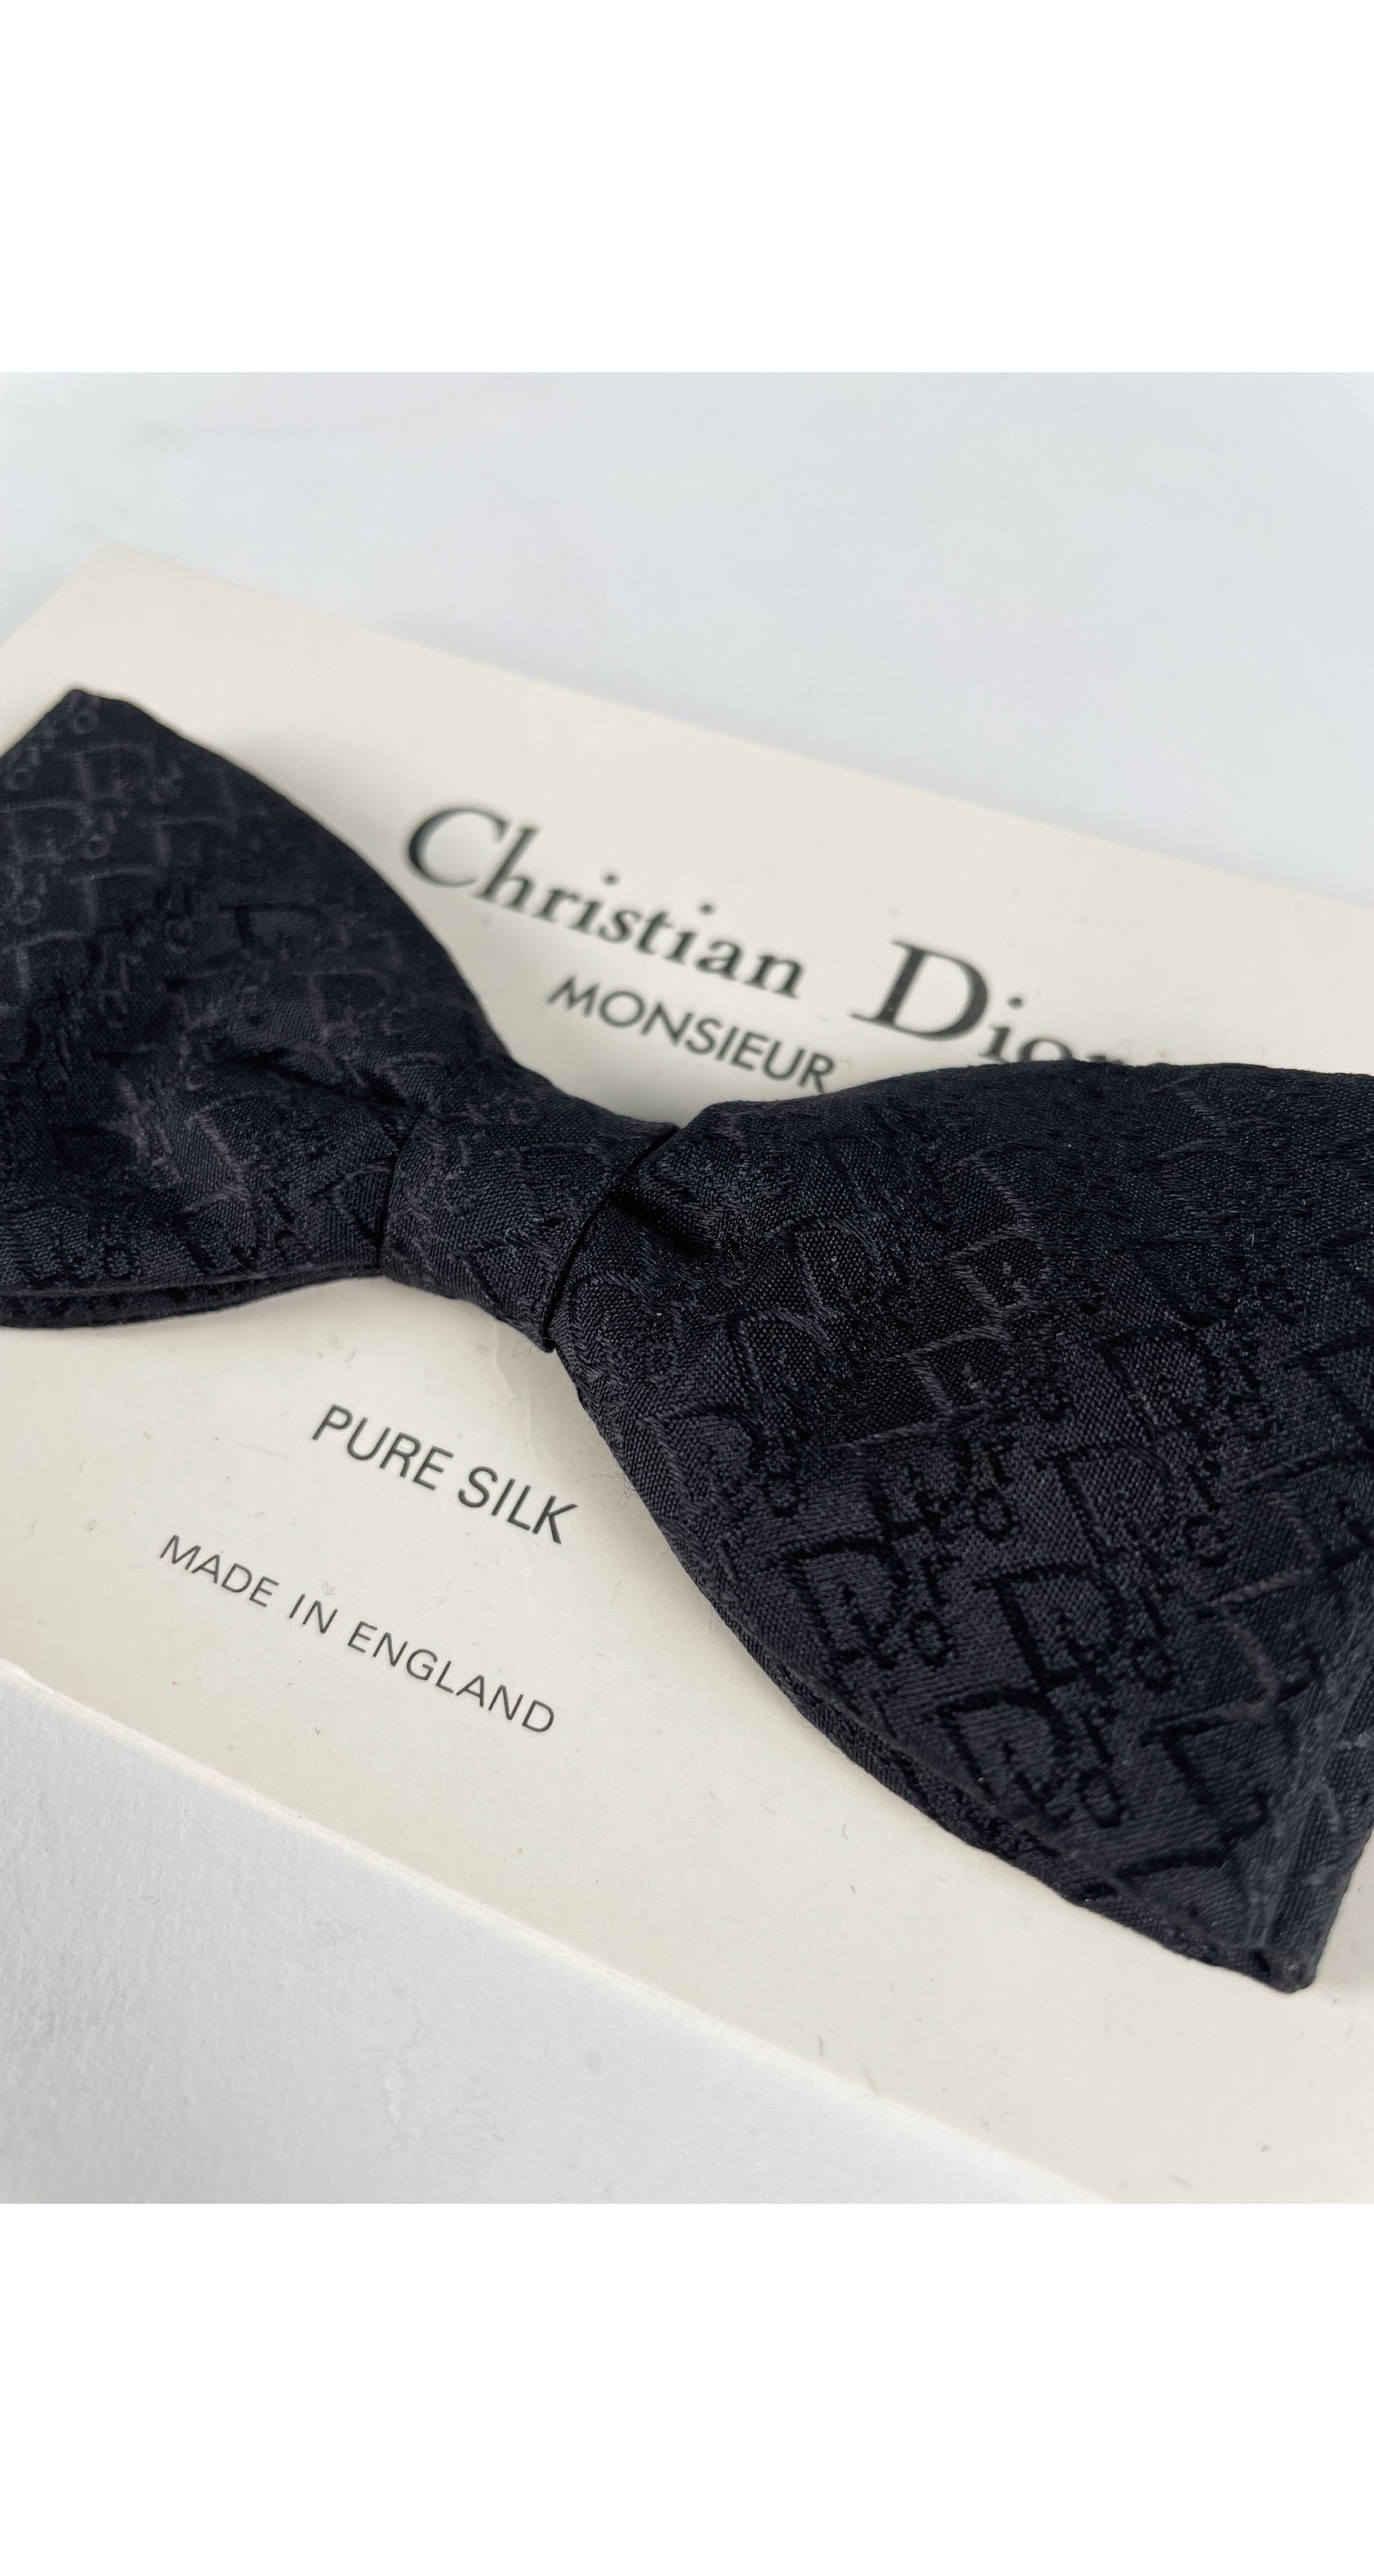 Dior Oblique Bow Tie